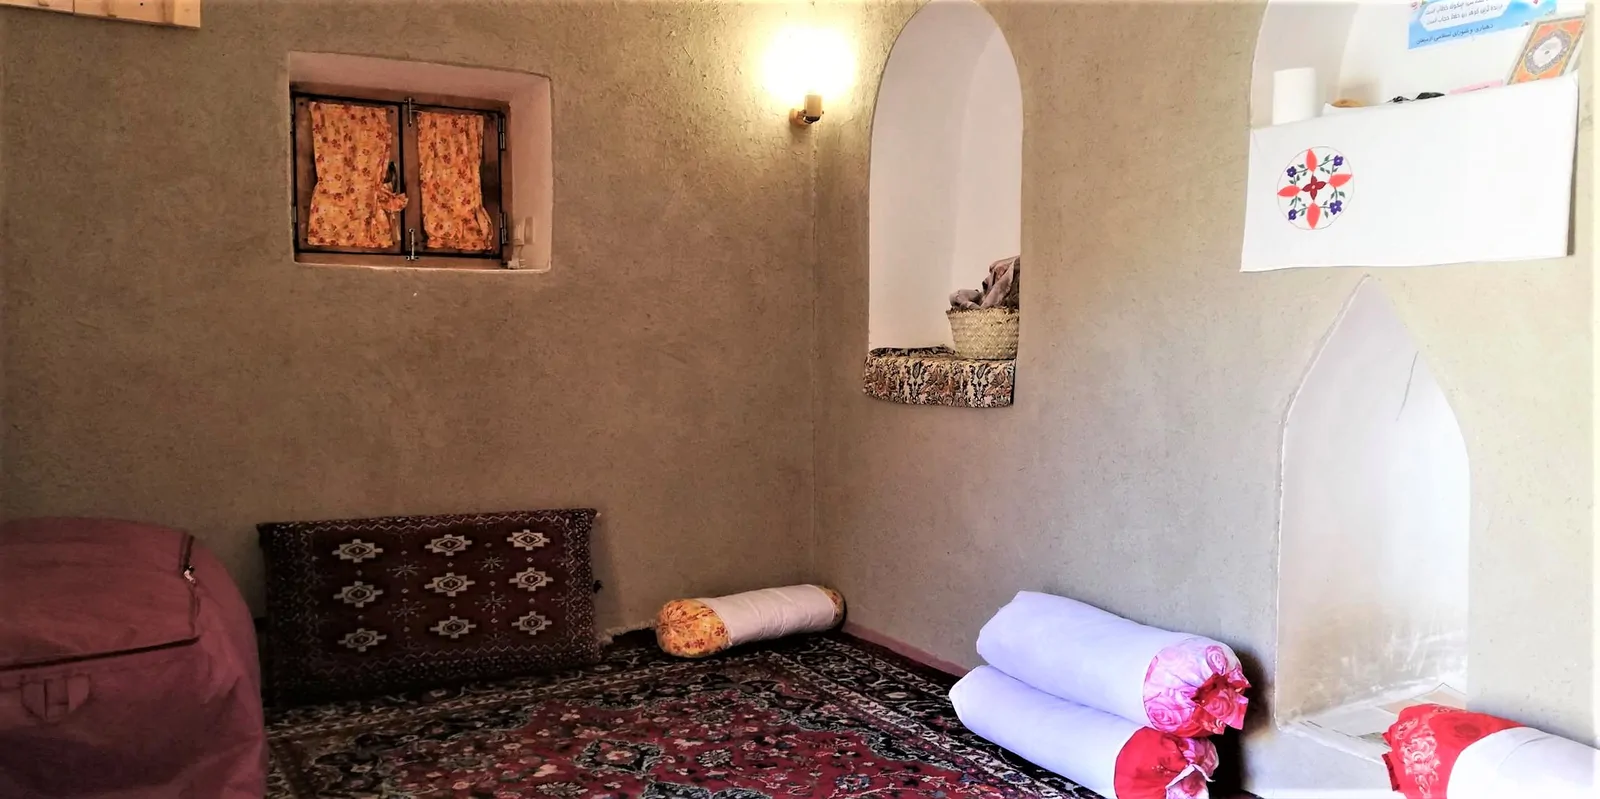 اقامتگاه بوم‌گردی آق سید ذبیح الله  (اتاق کوچیک)،طبس - اجاره اقامتگاه بوم‌گردی در طبس - اتاقک